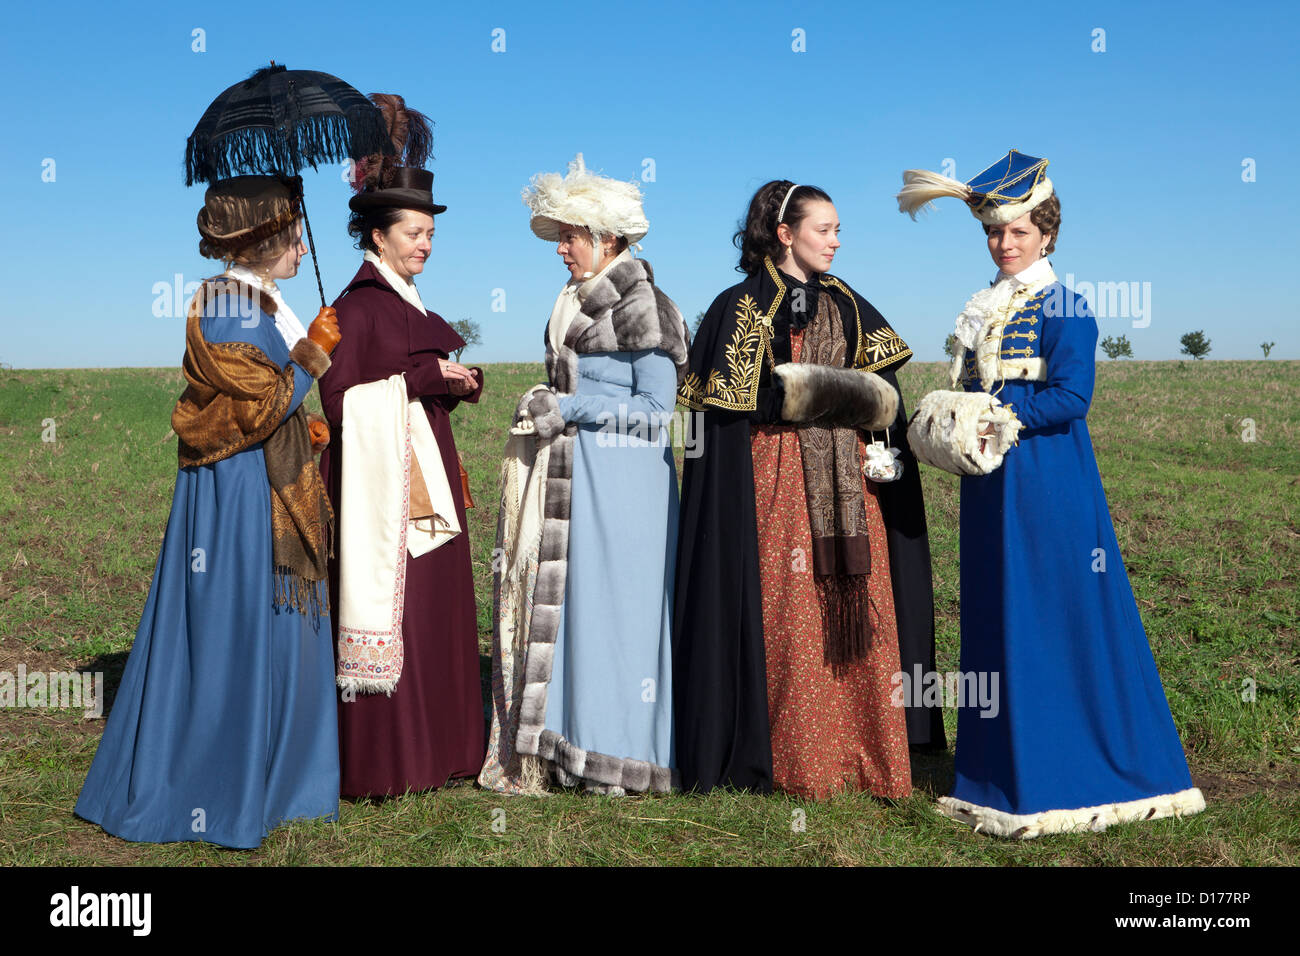 Fünf schöne Frauen im 19. Jahrhundert Kleidung in Jena, Deutschland  Stockfotografie - Alamy